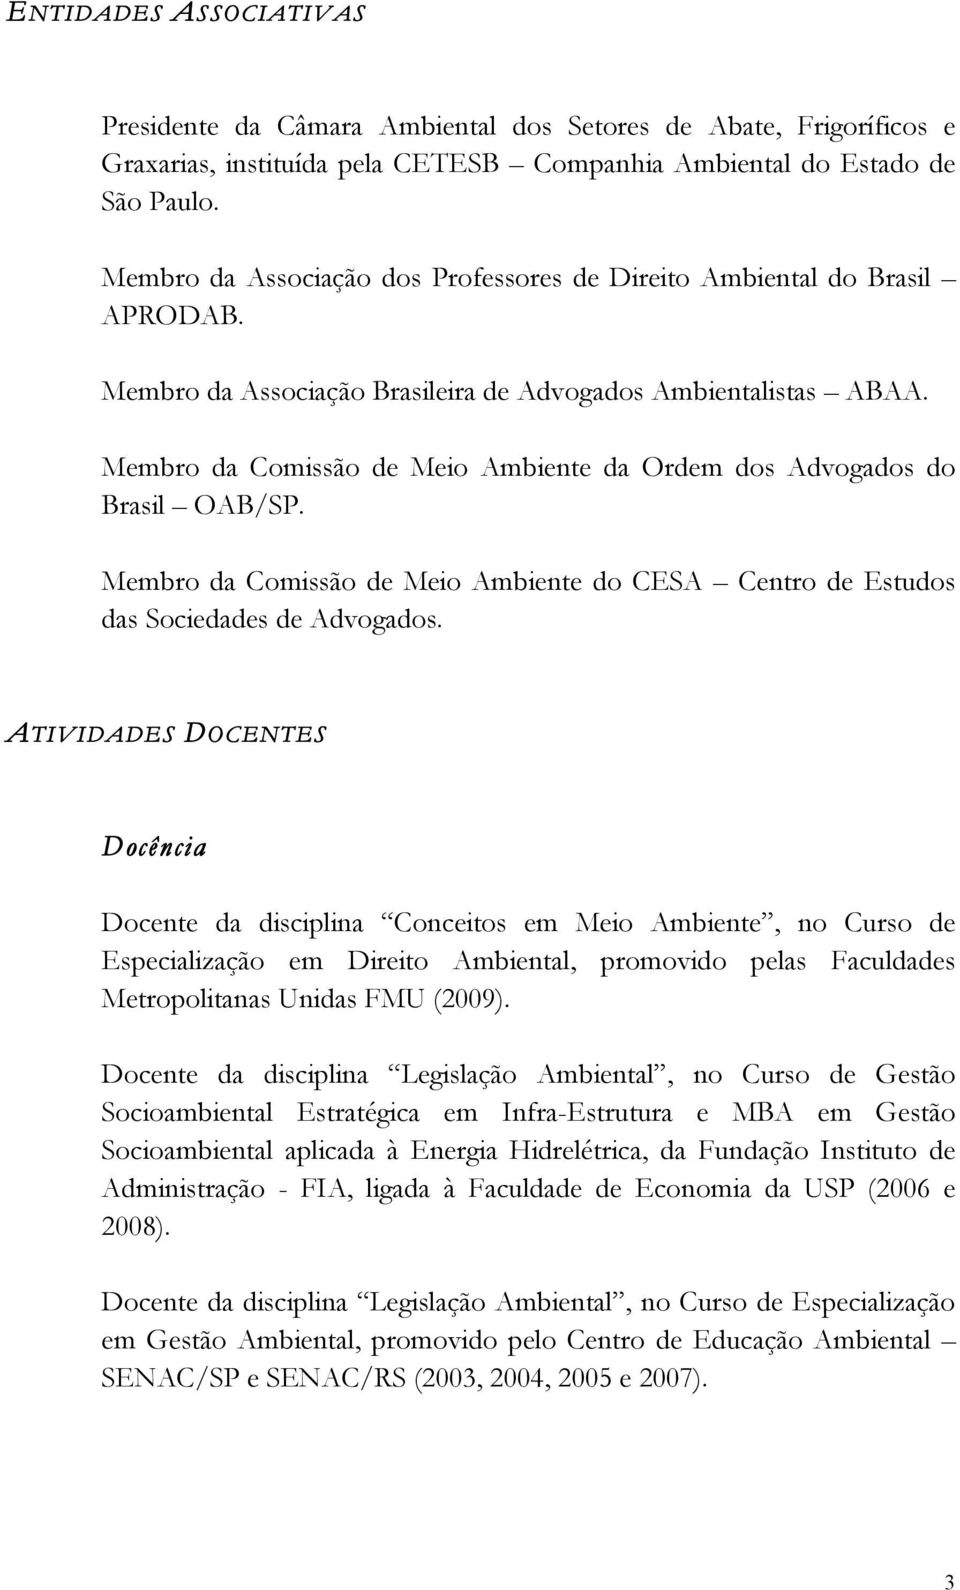 Membro da Comissão de Meio Ambiente da Ordem dos Advogados do Brasil OAB/SP. Membro da Comissão de Meio Ambiente do CESA Centro de Estudos das Sociedades de Advogados.